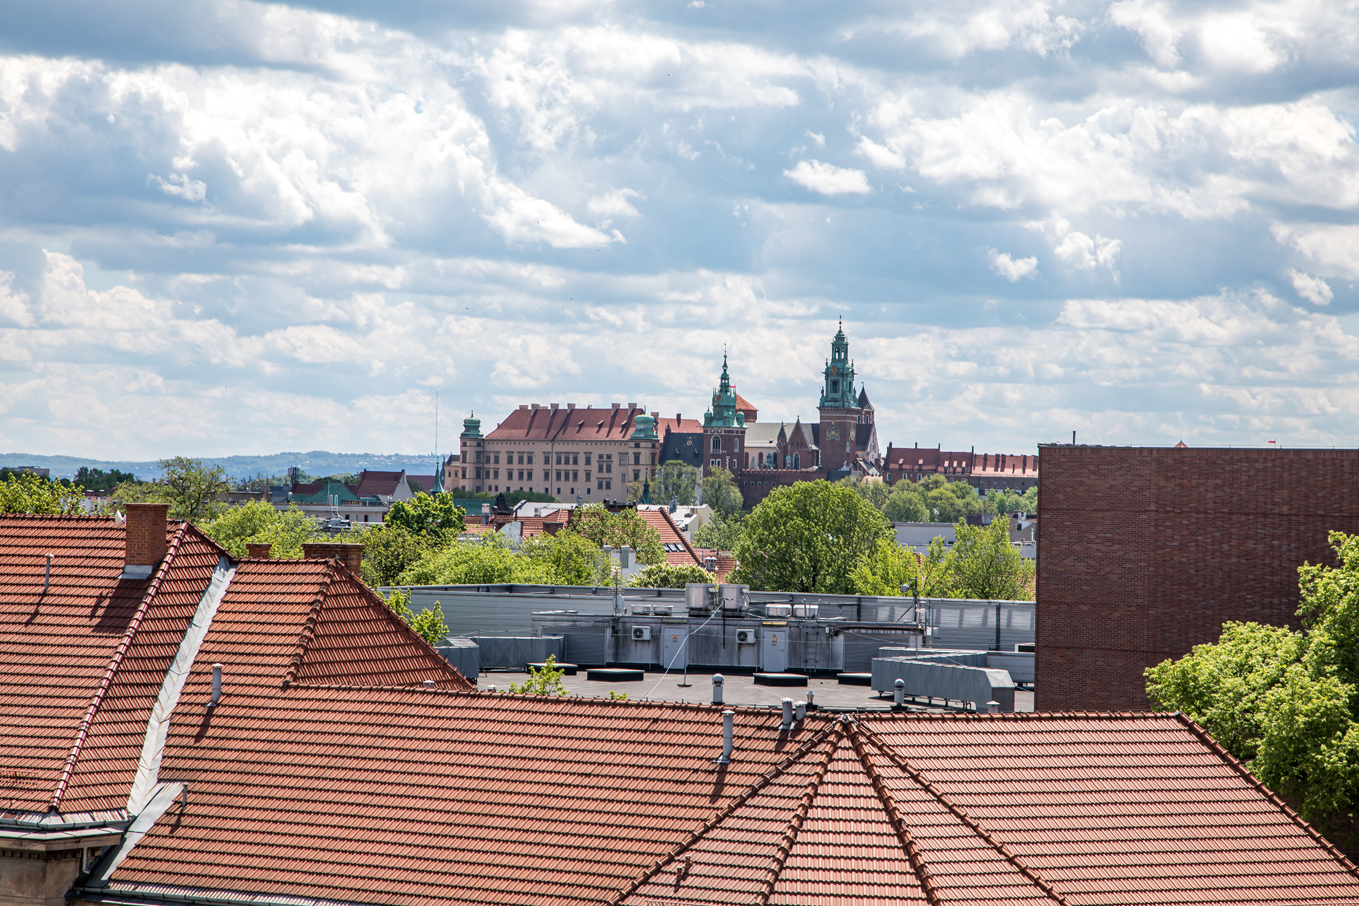 Zammek królewski na Wawelu na tle białych chmur. Przed zamkiem pomarańczowe dachówki budynków.